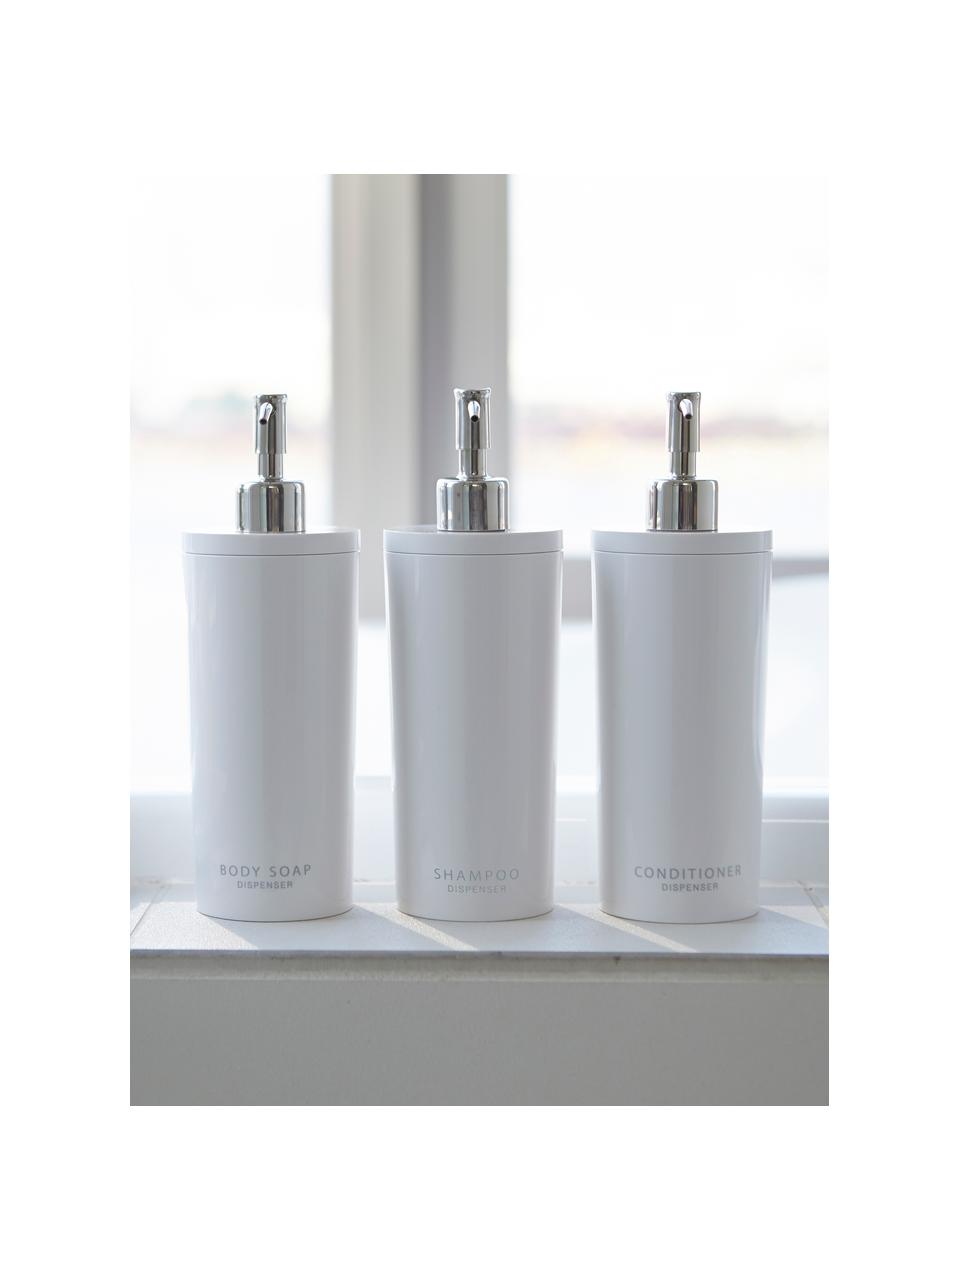 Dispenser per sapone Tower, Contenitore: plastica, Testa della pompa: acciaio, spazzolato, Bianco, Ø 8 x Alt. 23 cm